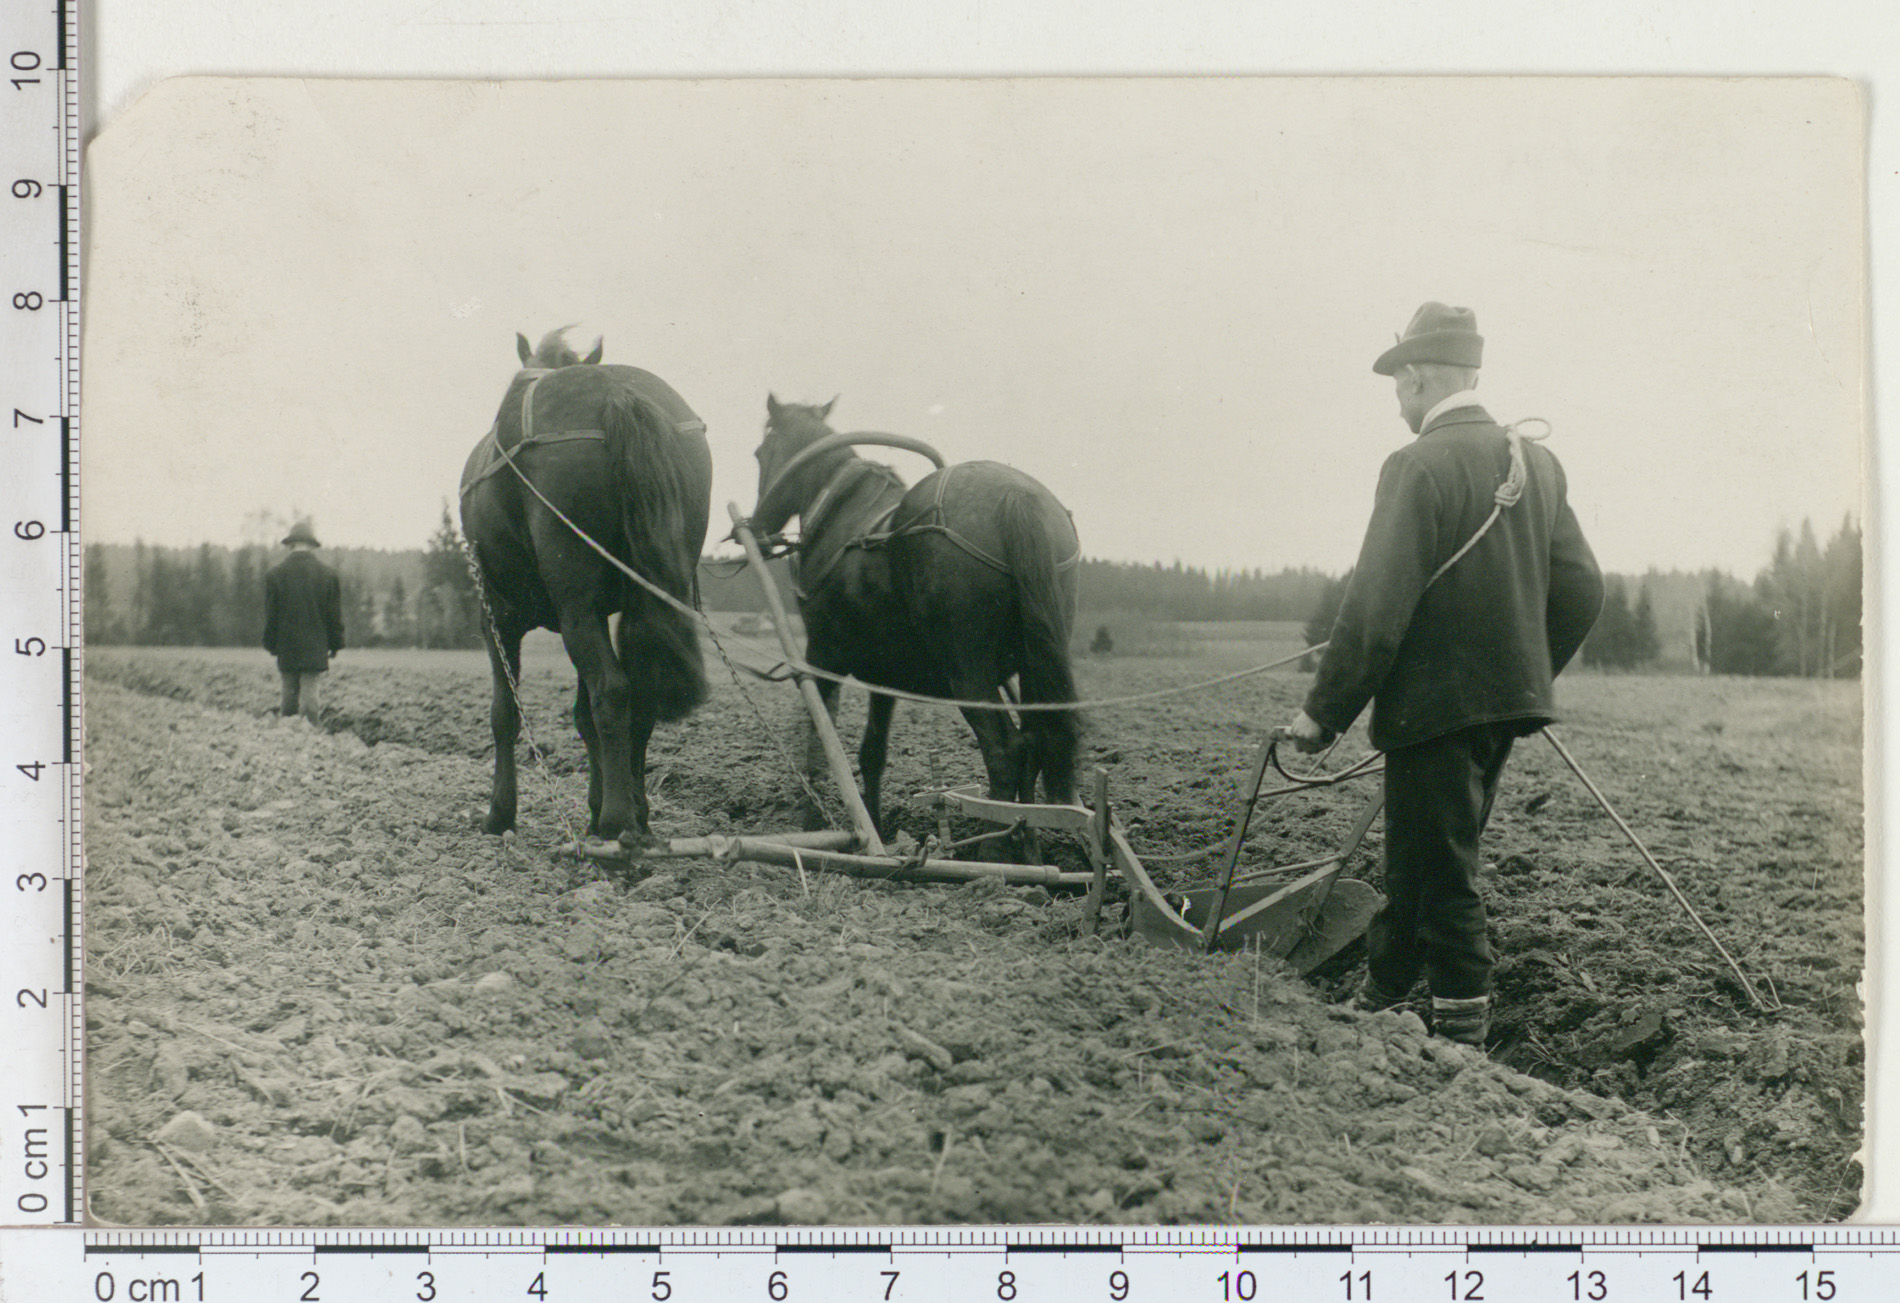 Must valge pilt põllul töötavast mehes, hõlmadrast ja kahest hobusest.